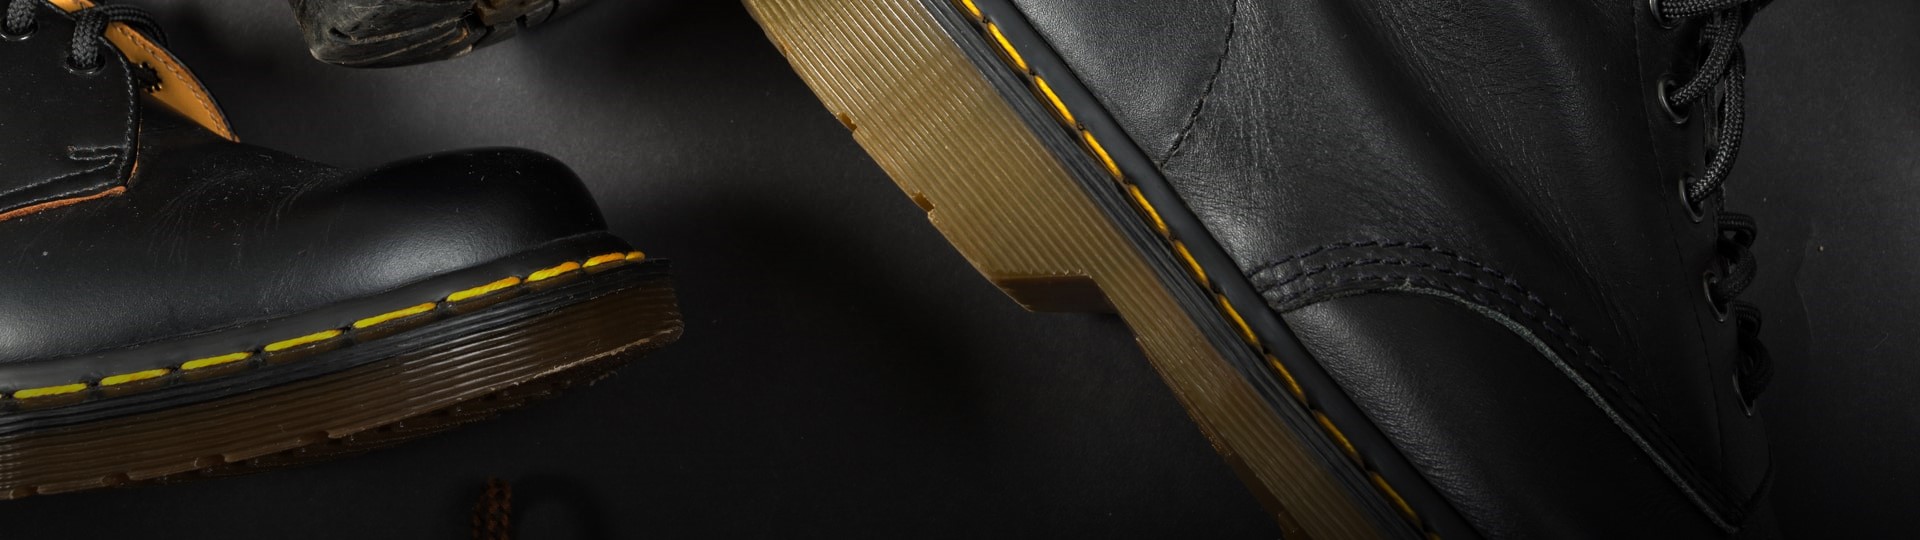 Výrobce obuvi Dr. Martens plánuje vstup na londýnskou burzu